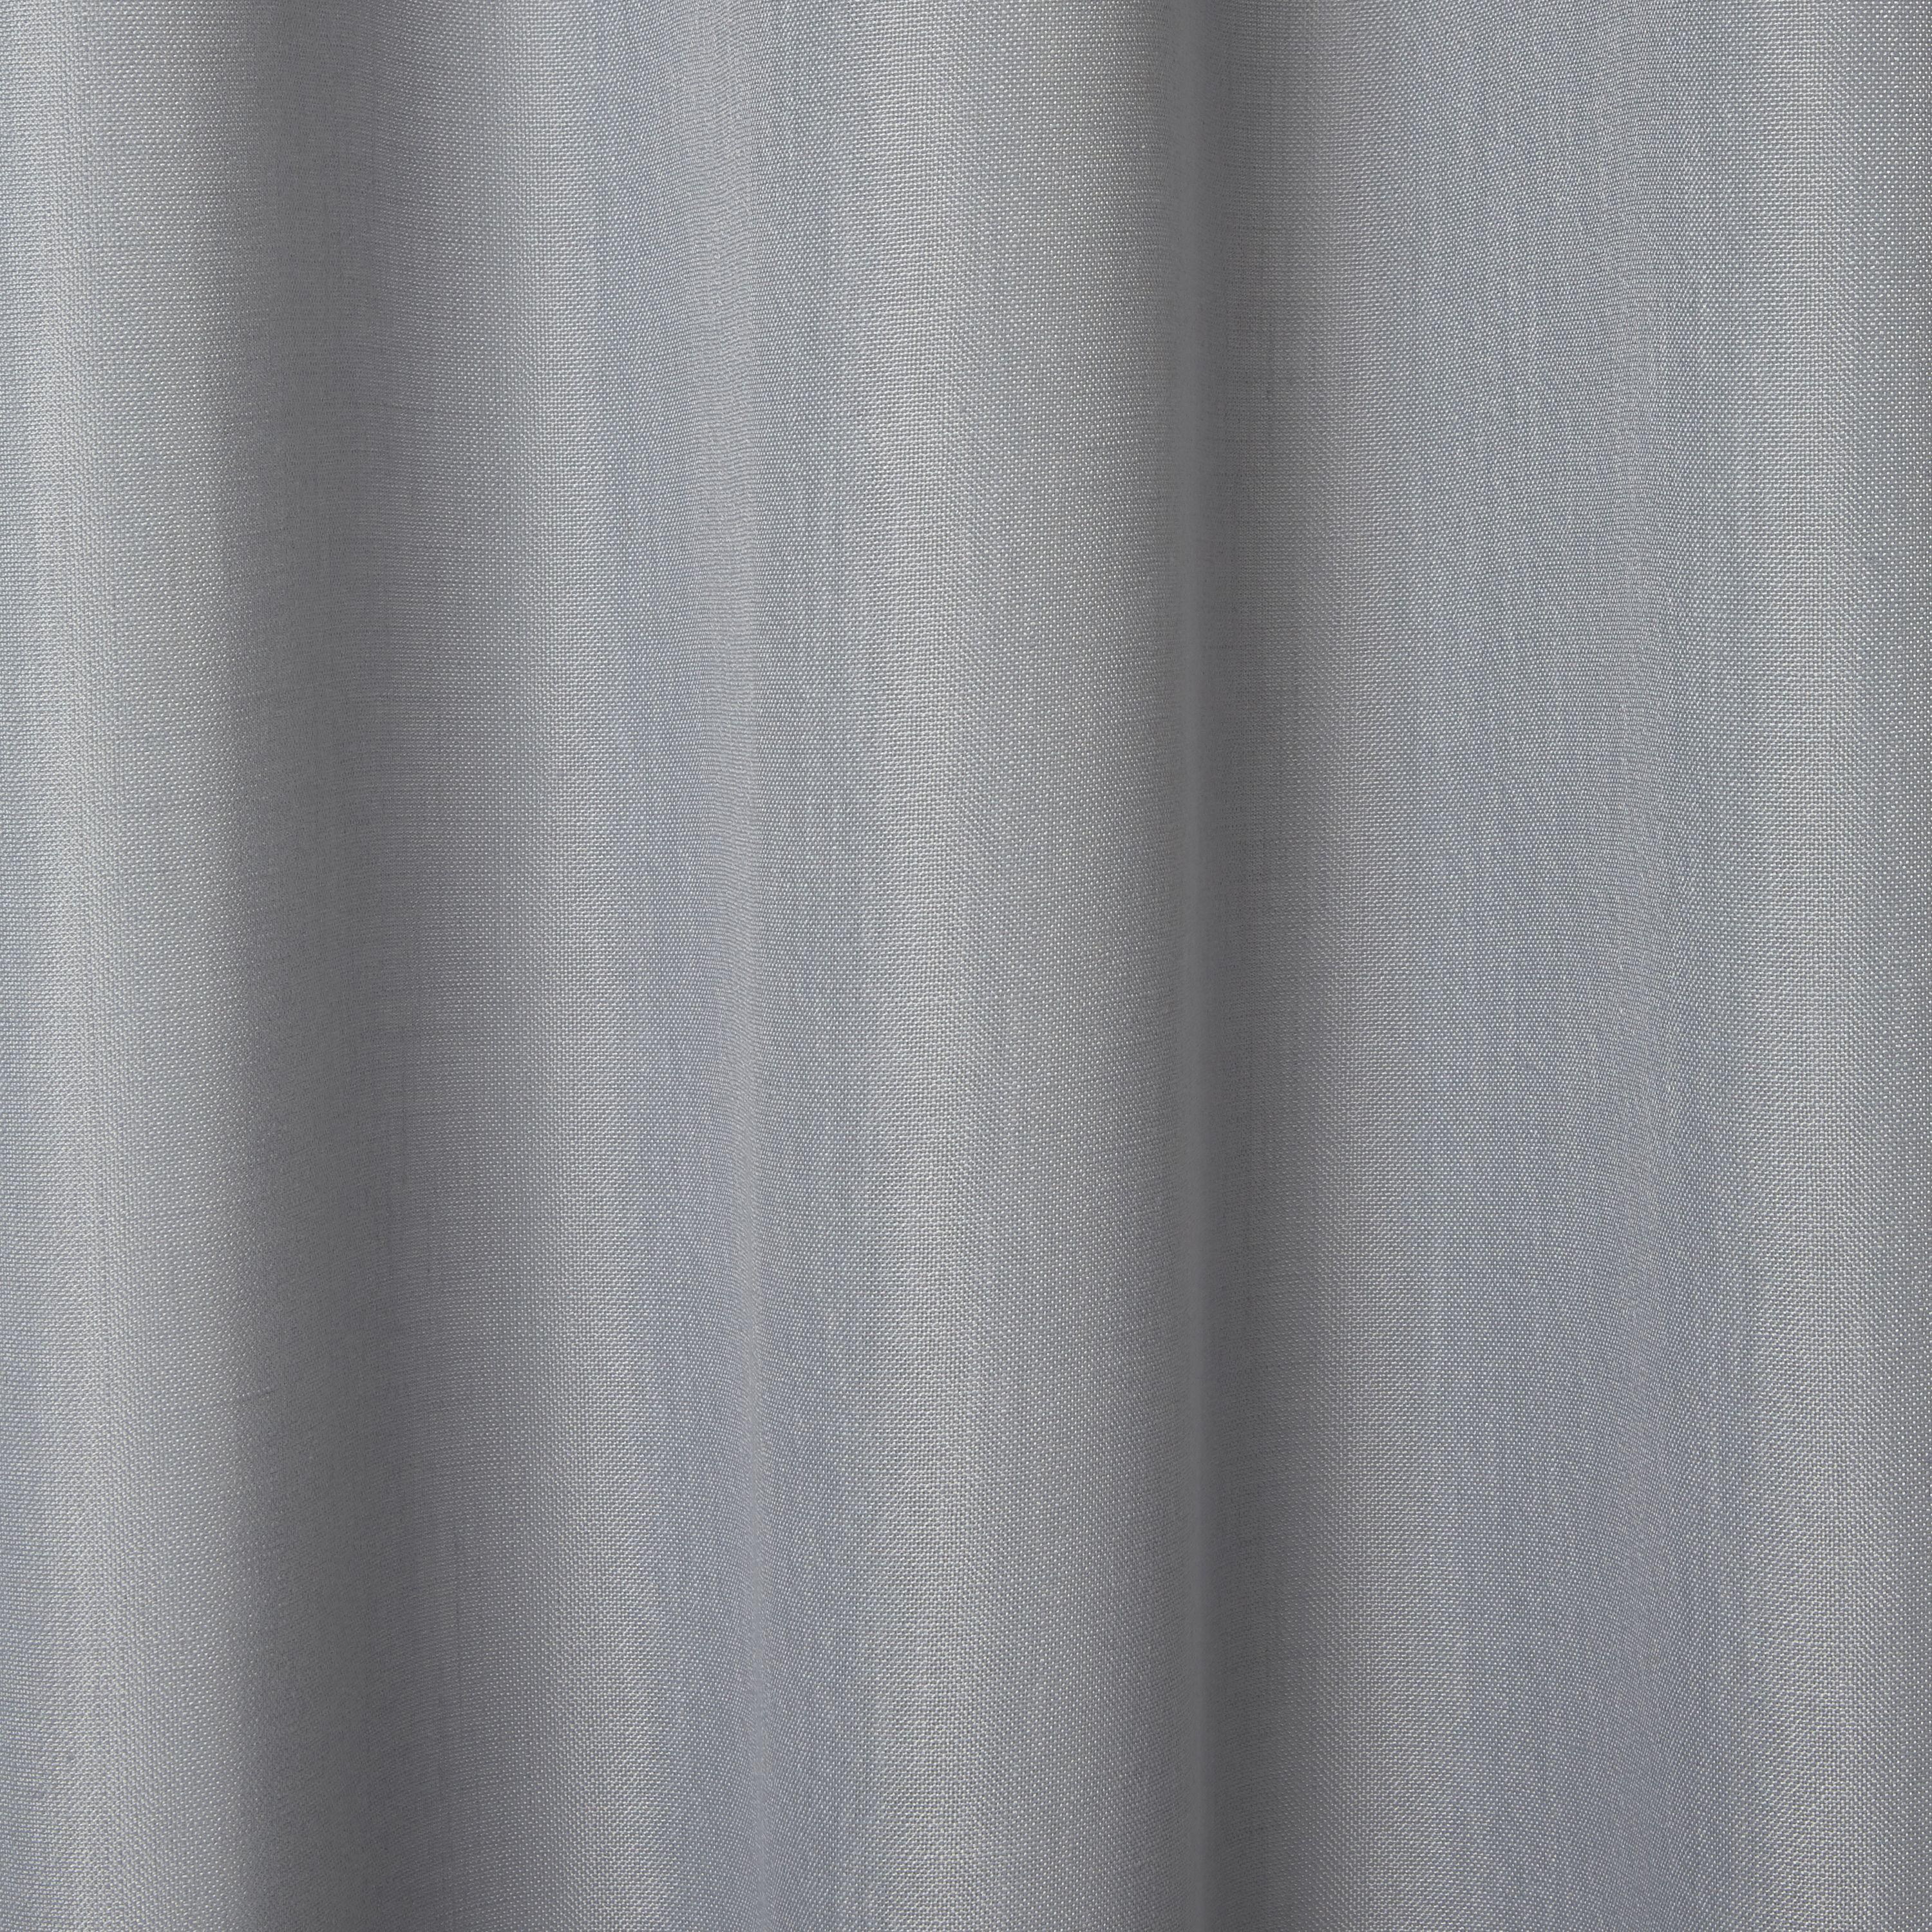 Kippens Grey plain Unlined Eyelet Voile curtain (W)140cm (L)260cm, Single